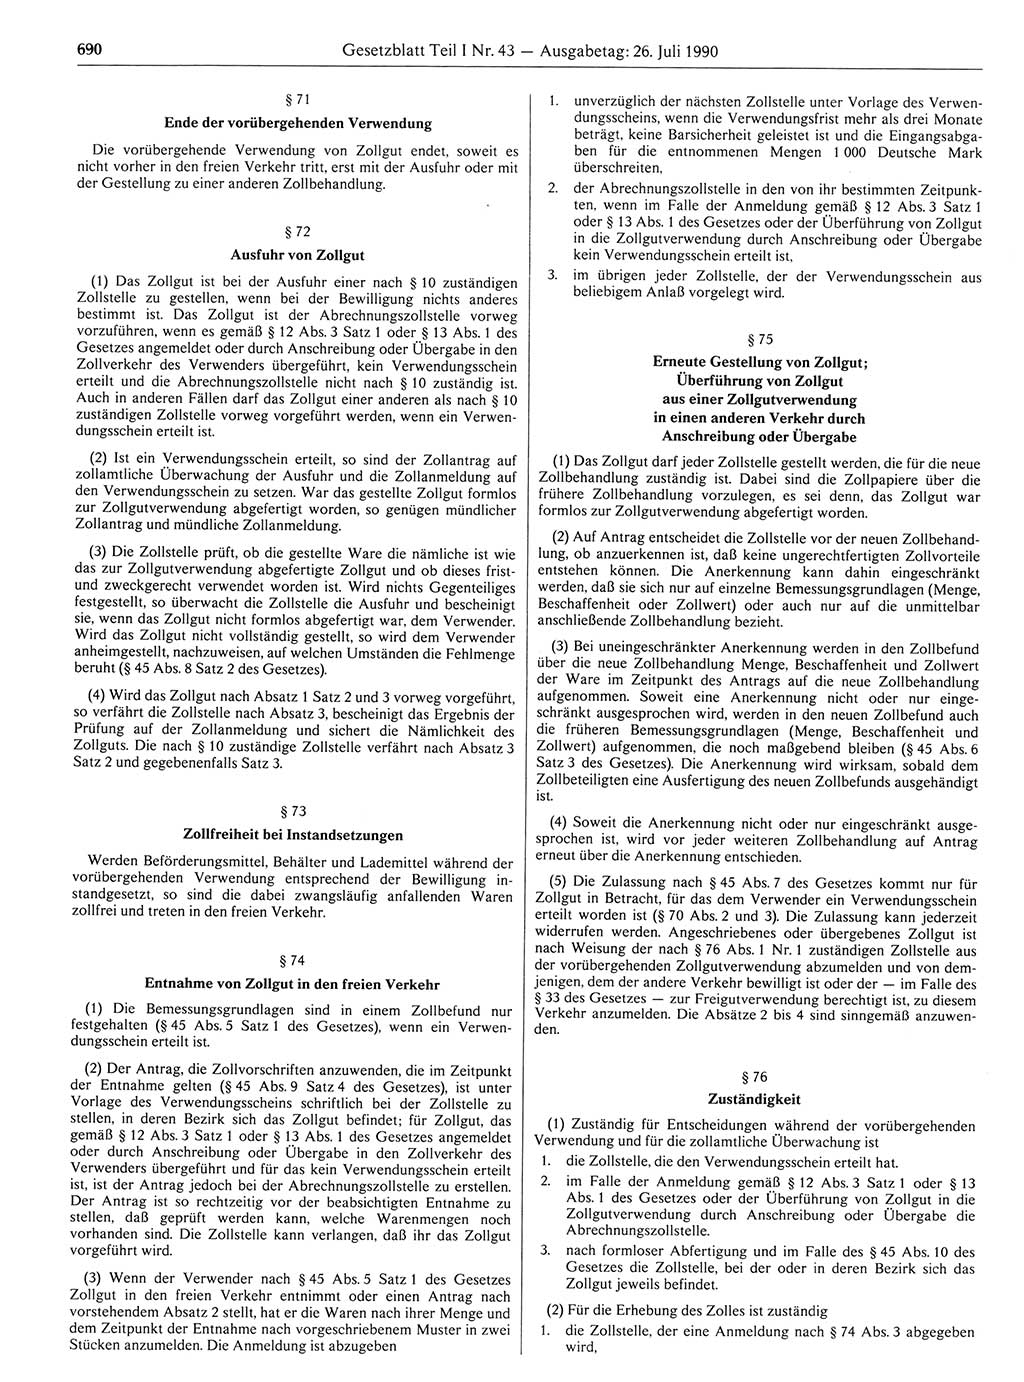 Gesetzblatt (GBl.) der Deutschen Demokratischen Republik (DDR) Teil Ⅰ 1990, Seite 690 (GBl. DDR Ⅰ 1990, S. 690)